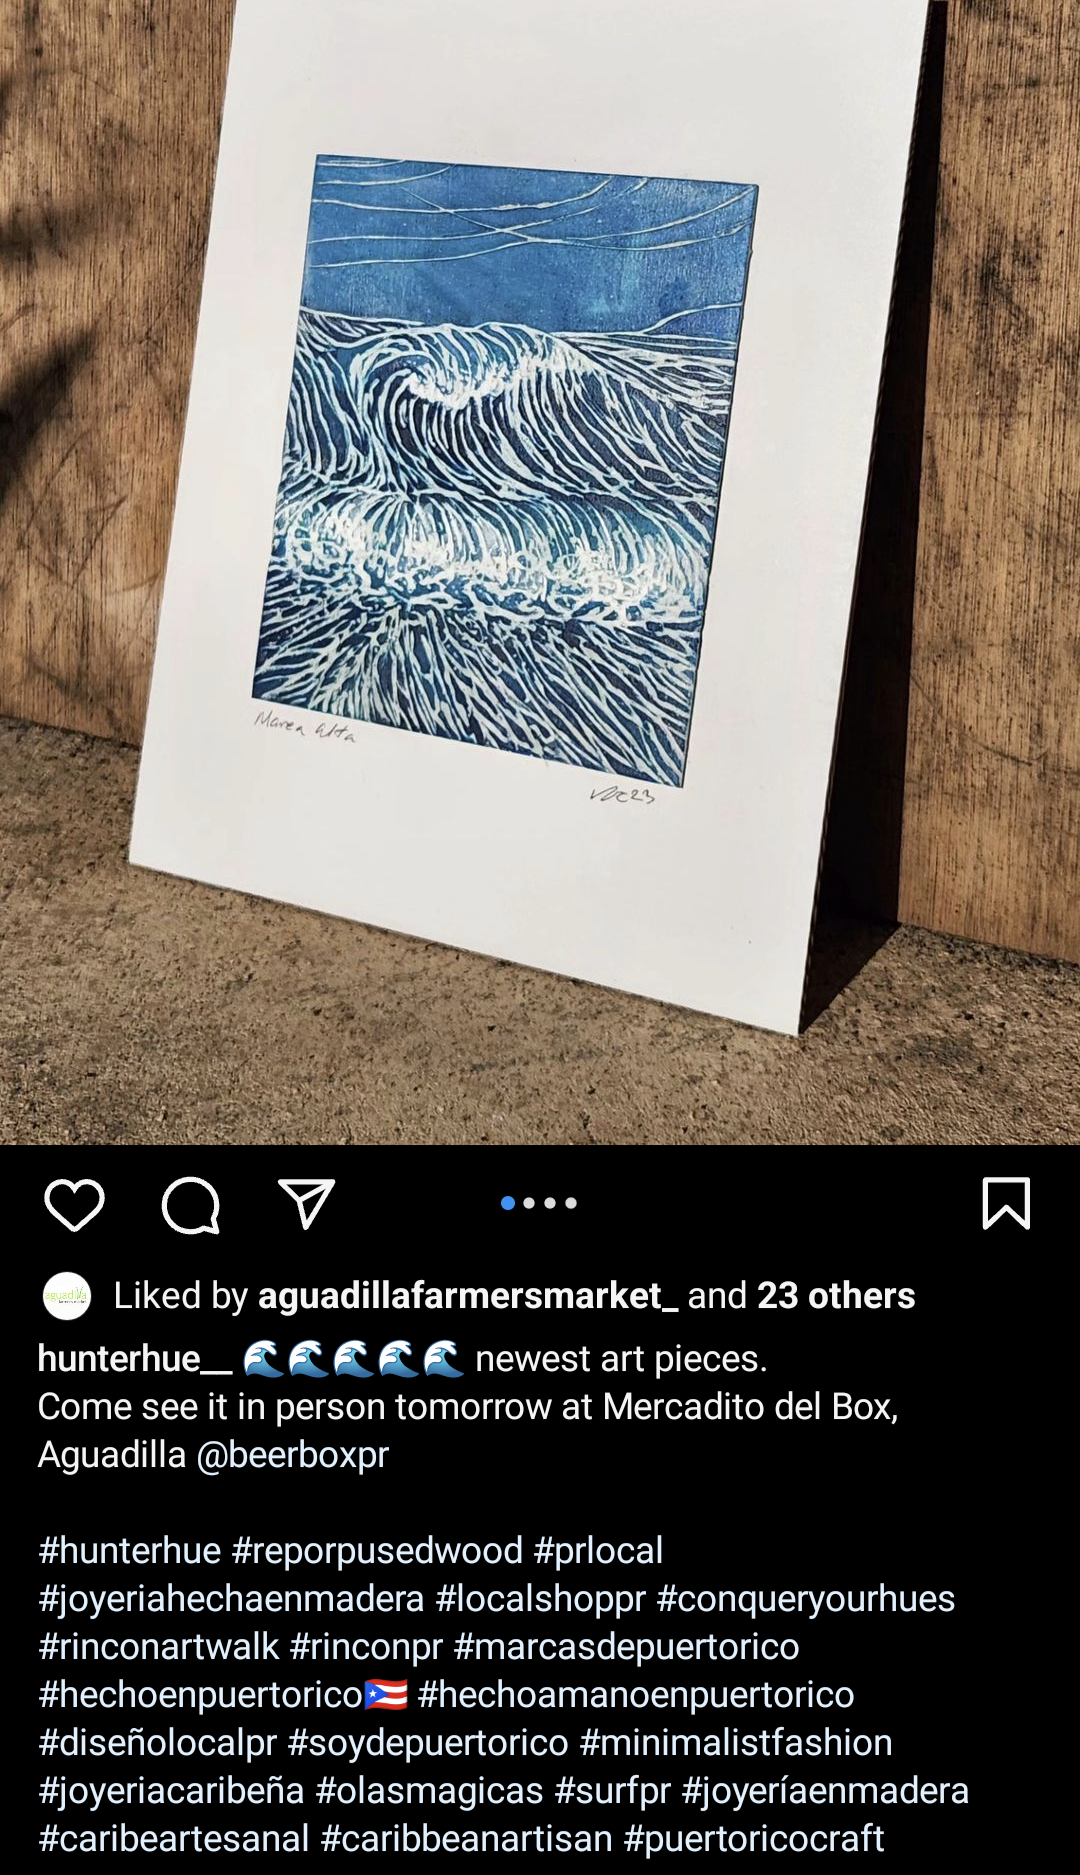 screenshot of Hunterhue Instagram post